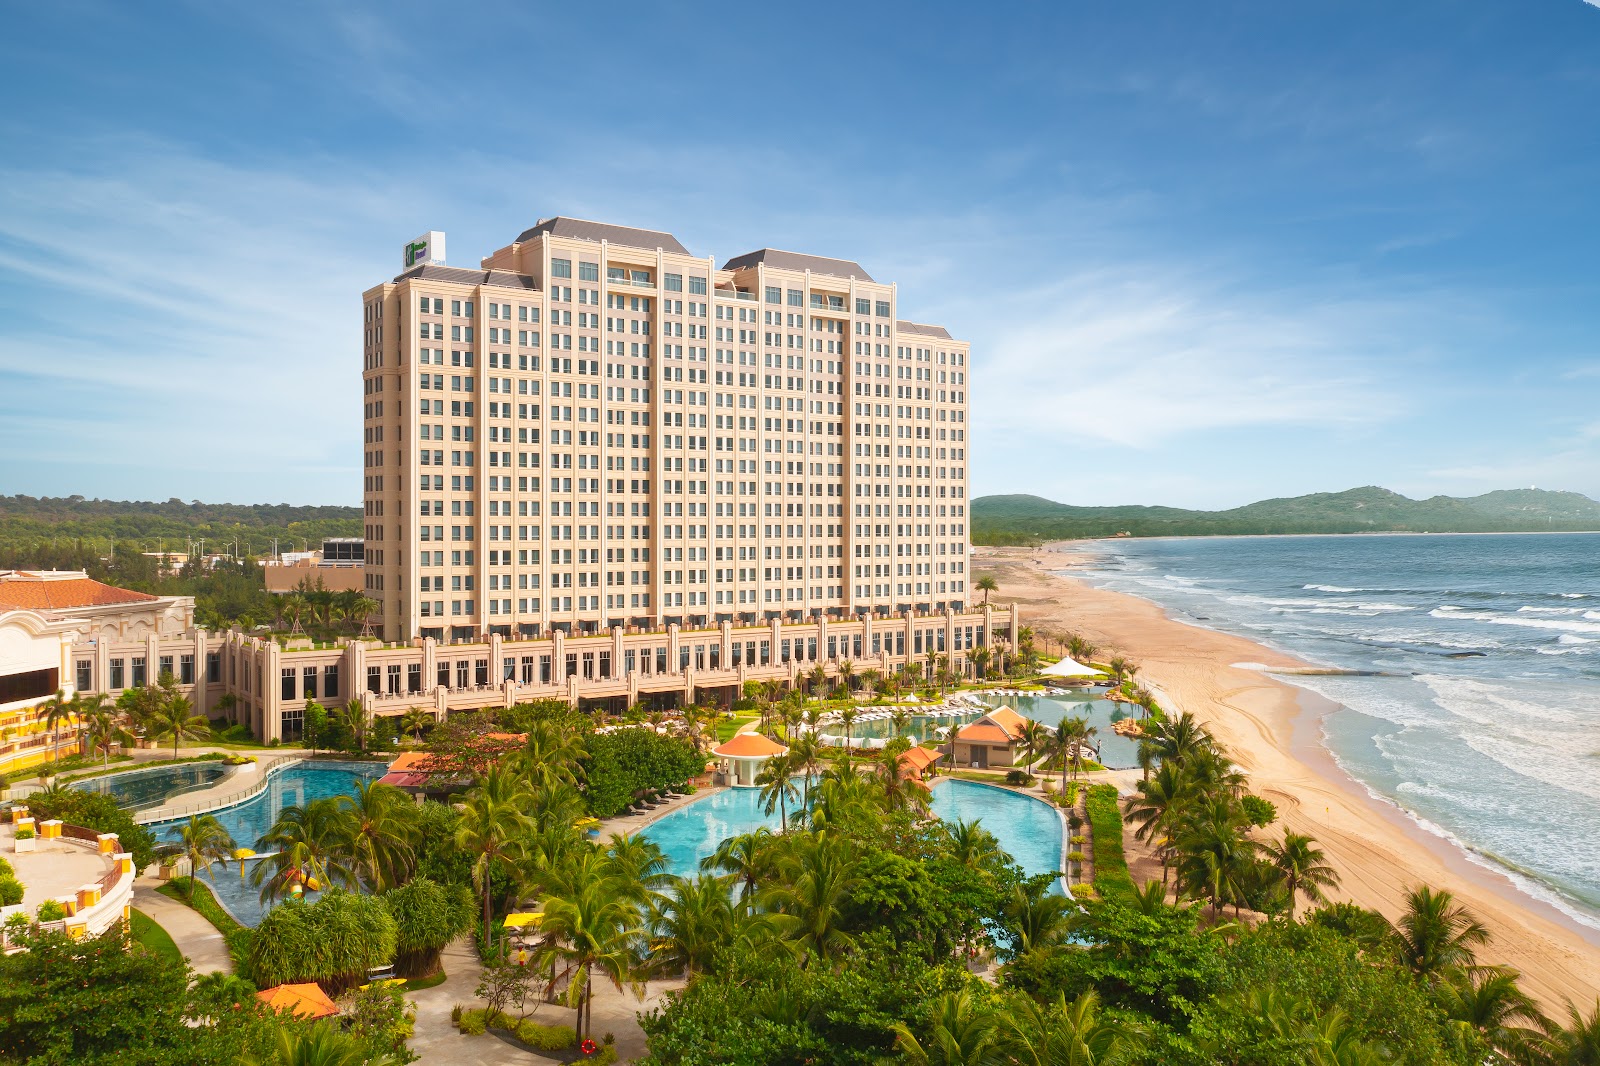 Foto af Holiday Inn Resort beach med lang lige kyst